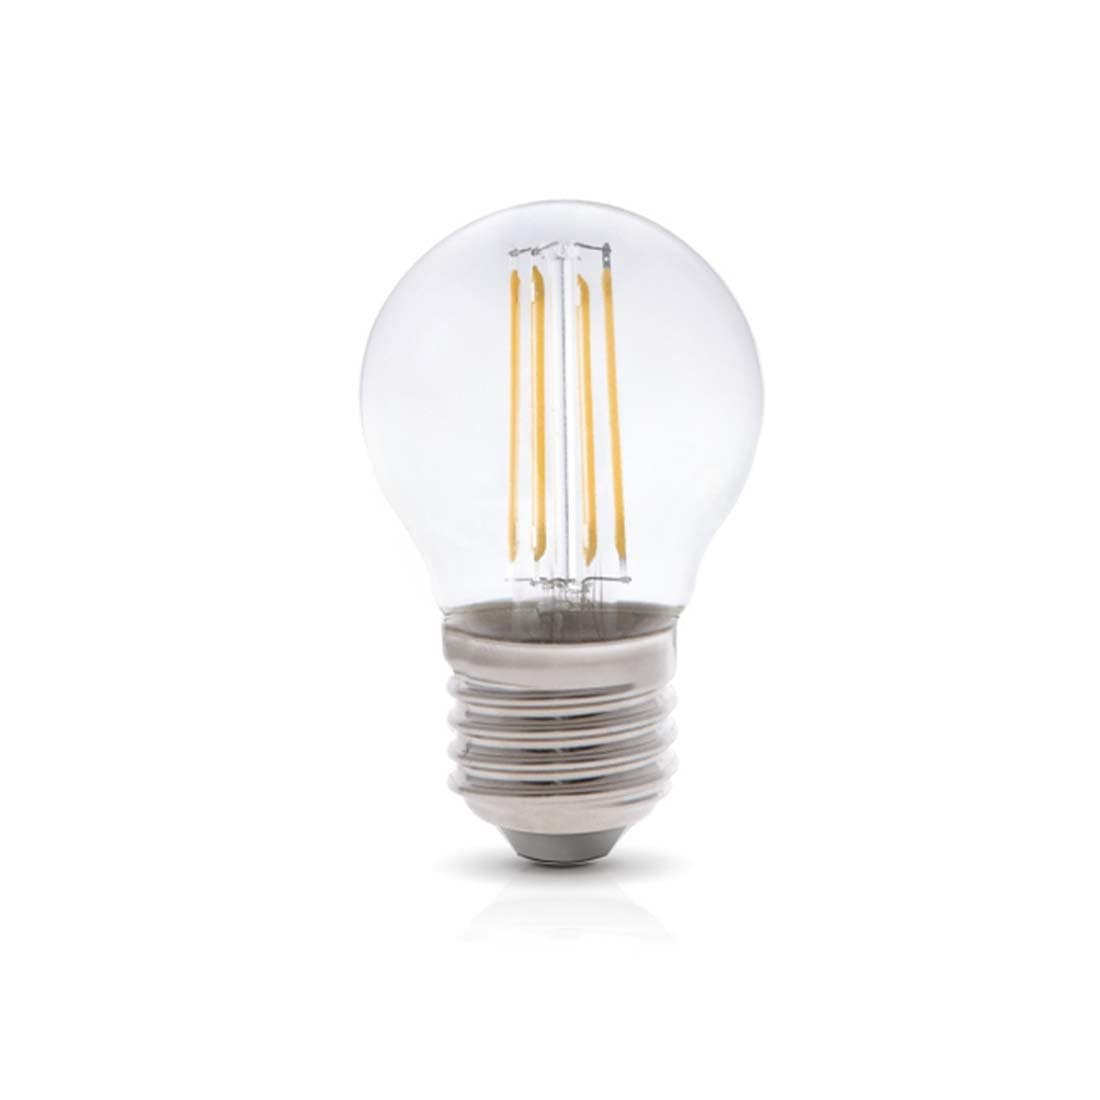 LED E27 vanlig sockel – den mest använda sockelstorleken i lampor 